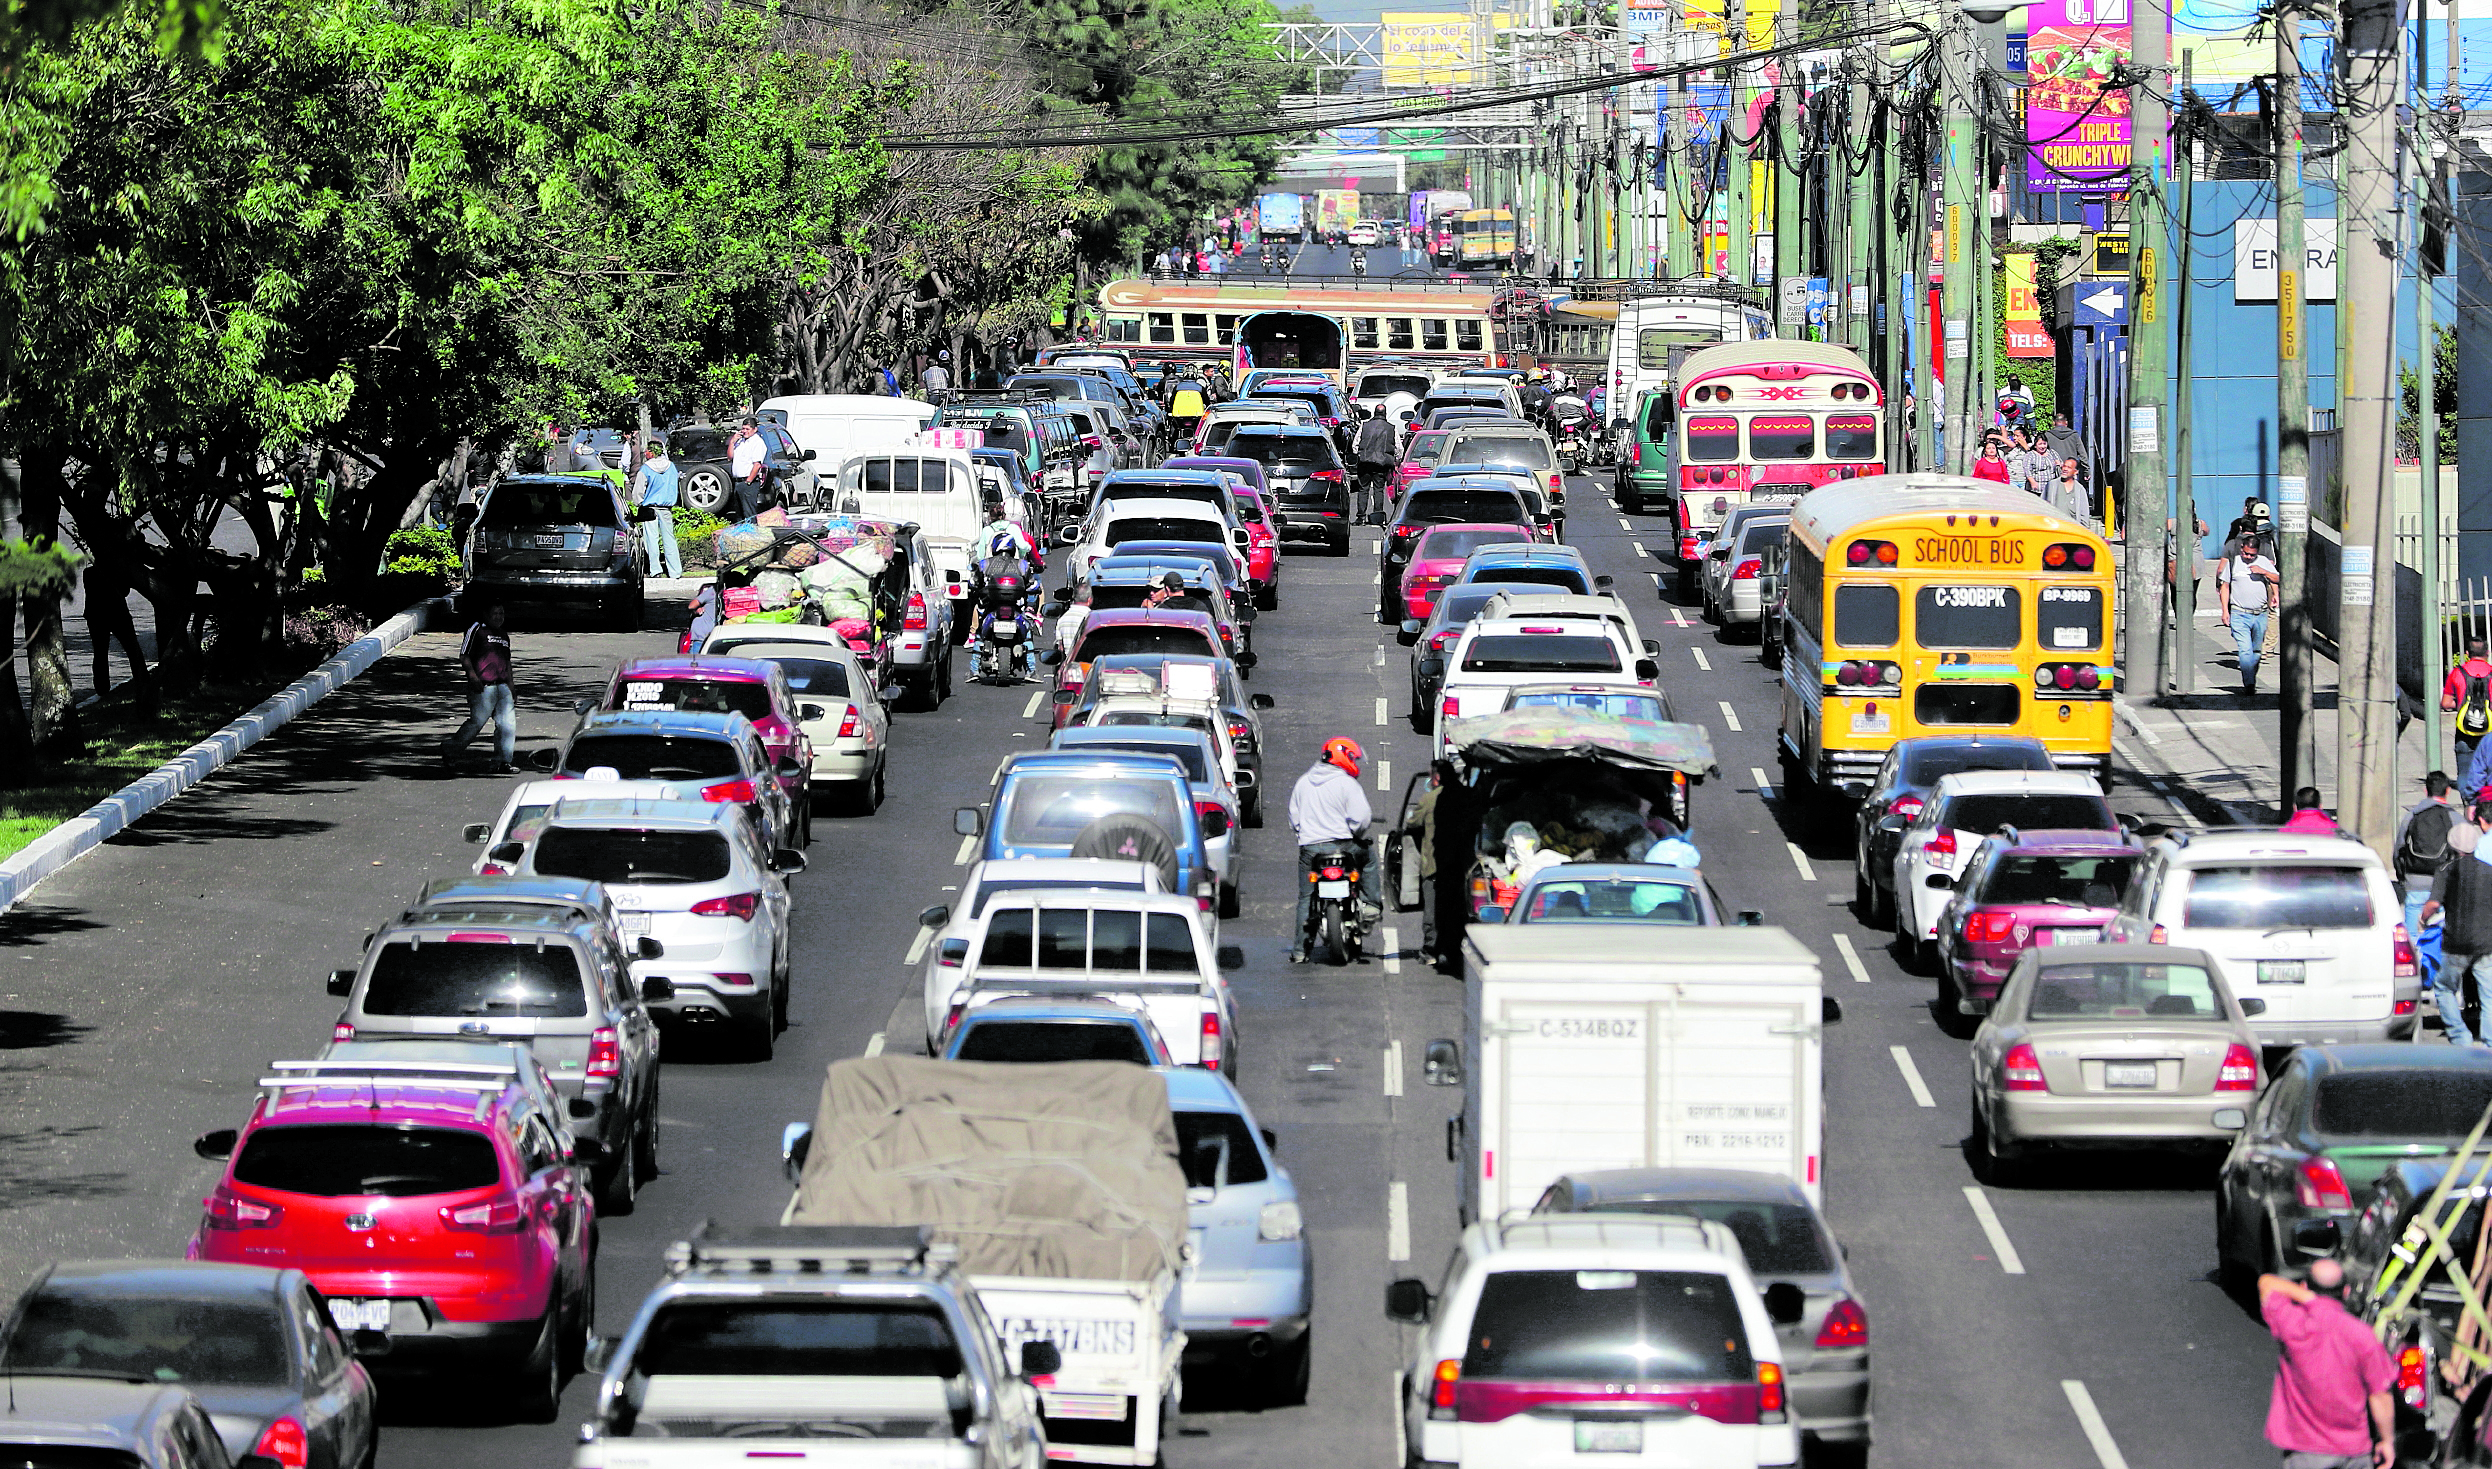 La calzada Roosevelt es una de las vías en donde más contaminación hay por el exceso de vehículos que circulan, según Flatbox. (Foto Prensa Libre: Hemeroteca PL)